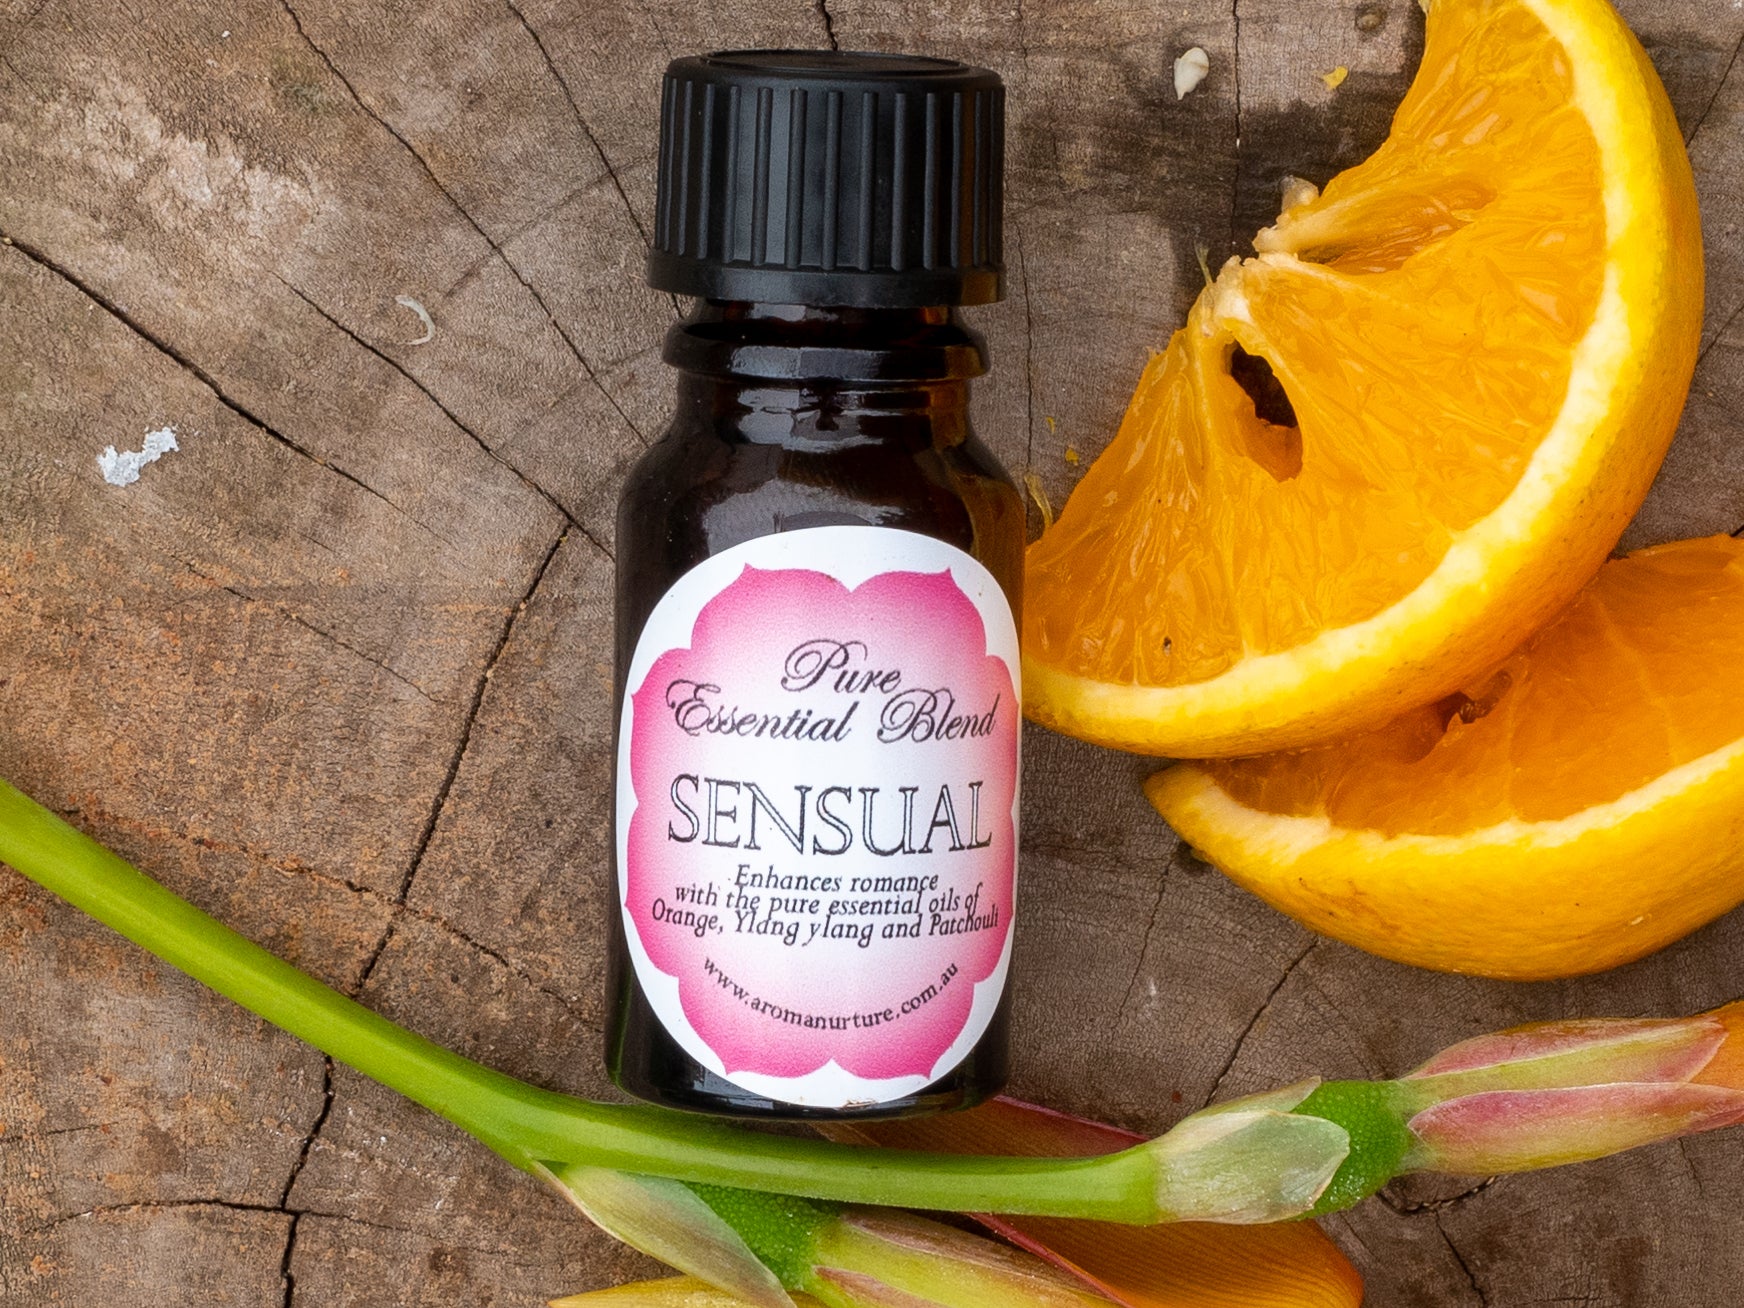 SENSUAL Pure essential oil blend